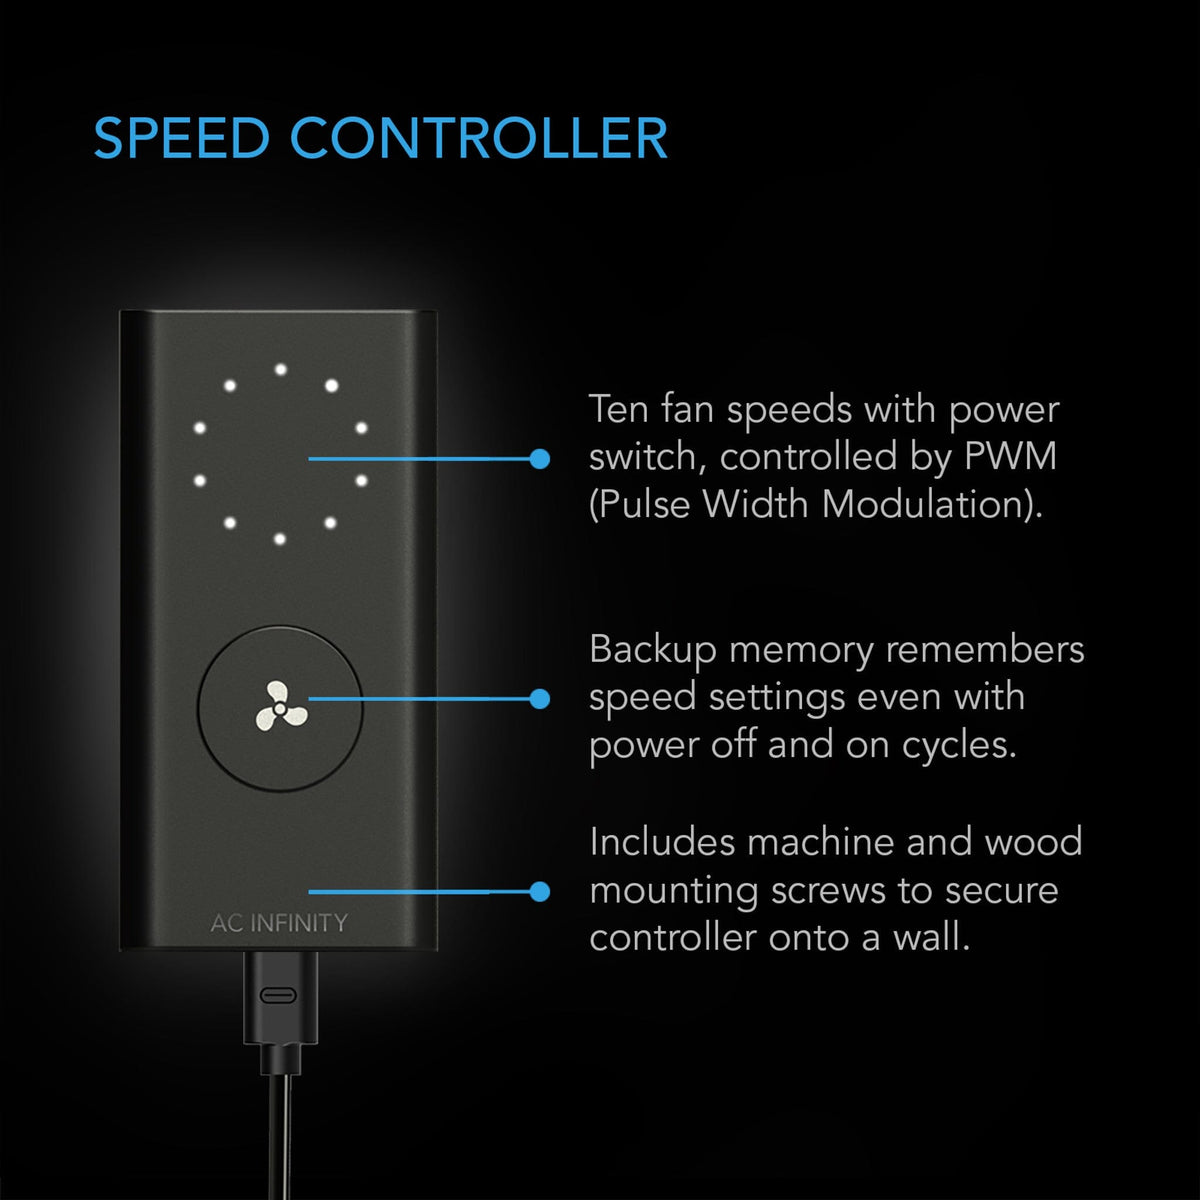 10 speed fan controller w pwm